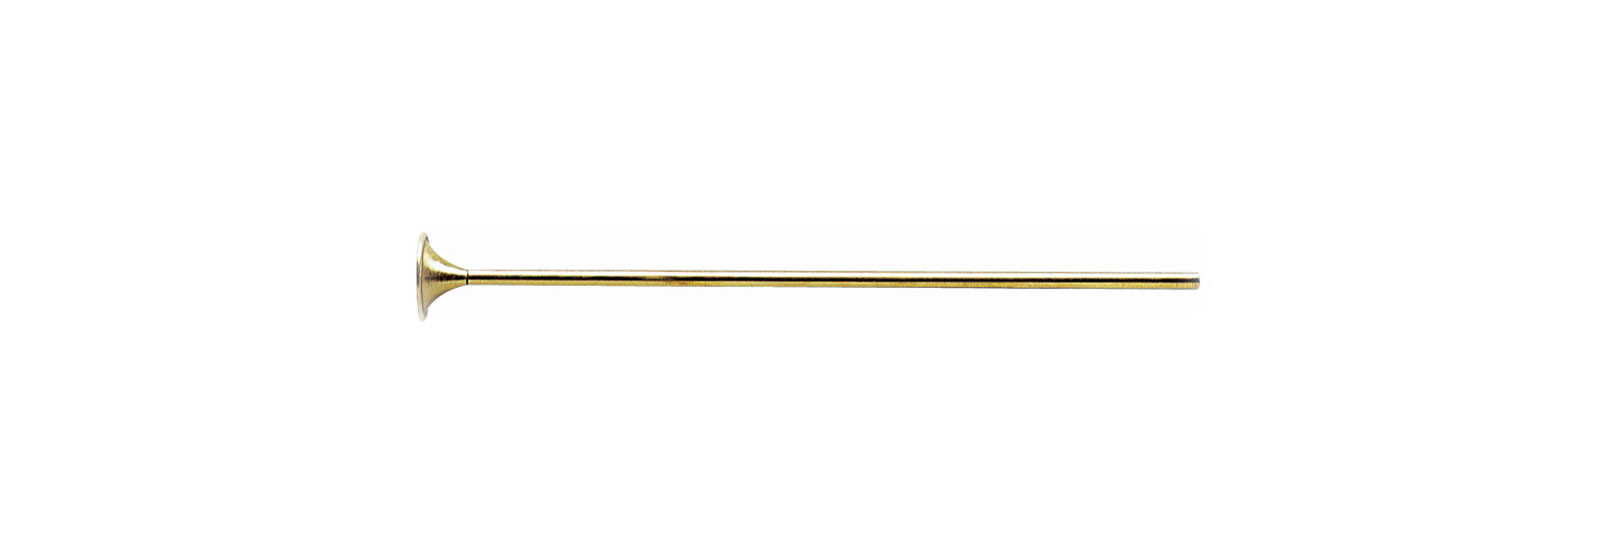 Brass loading funnel for pistol Ø7